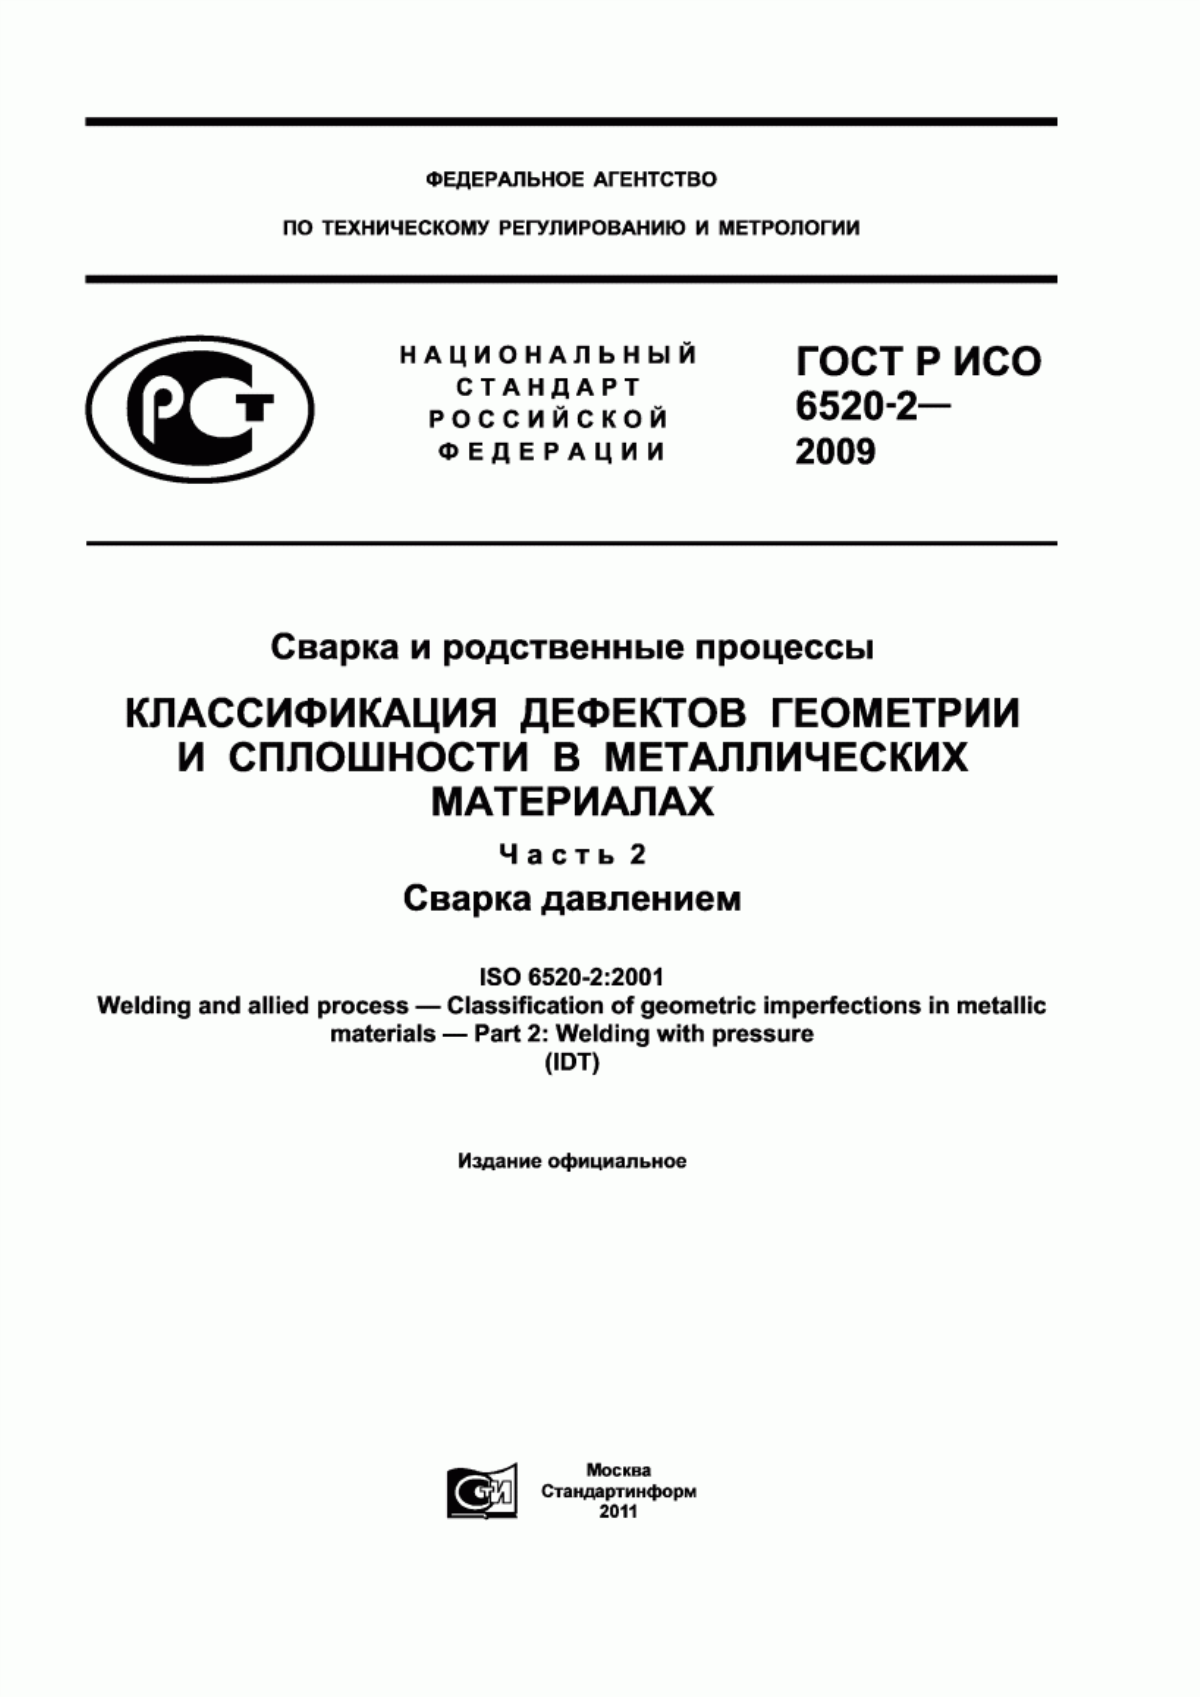 ГОСТ Р ИСО 6520-2-2009 Сварка и родственные процессы. Классификация дефектов геометрии и сплошности в металлических материалах. Часть 2. Сварка давлением